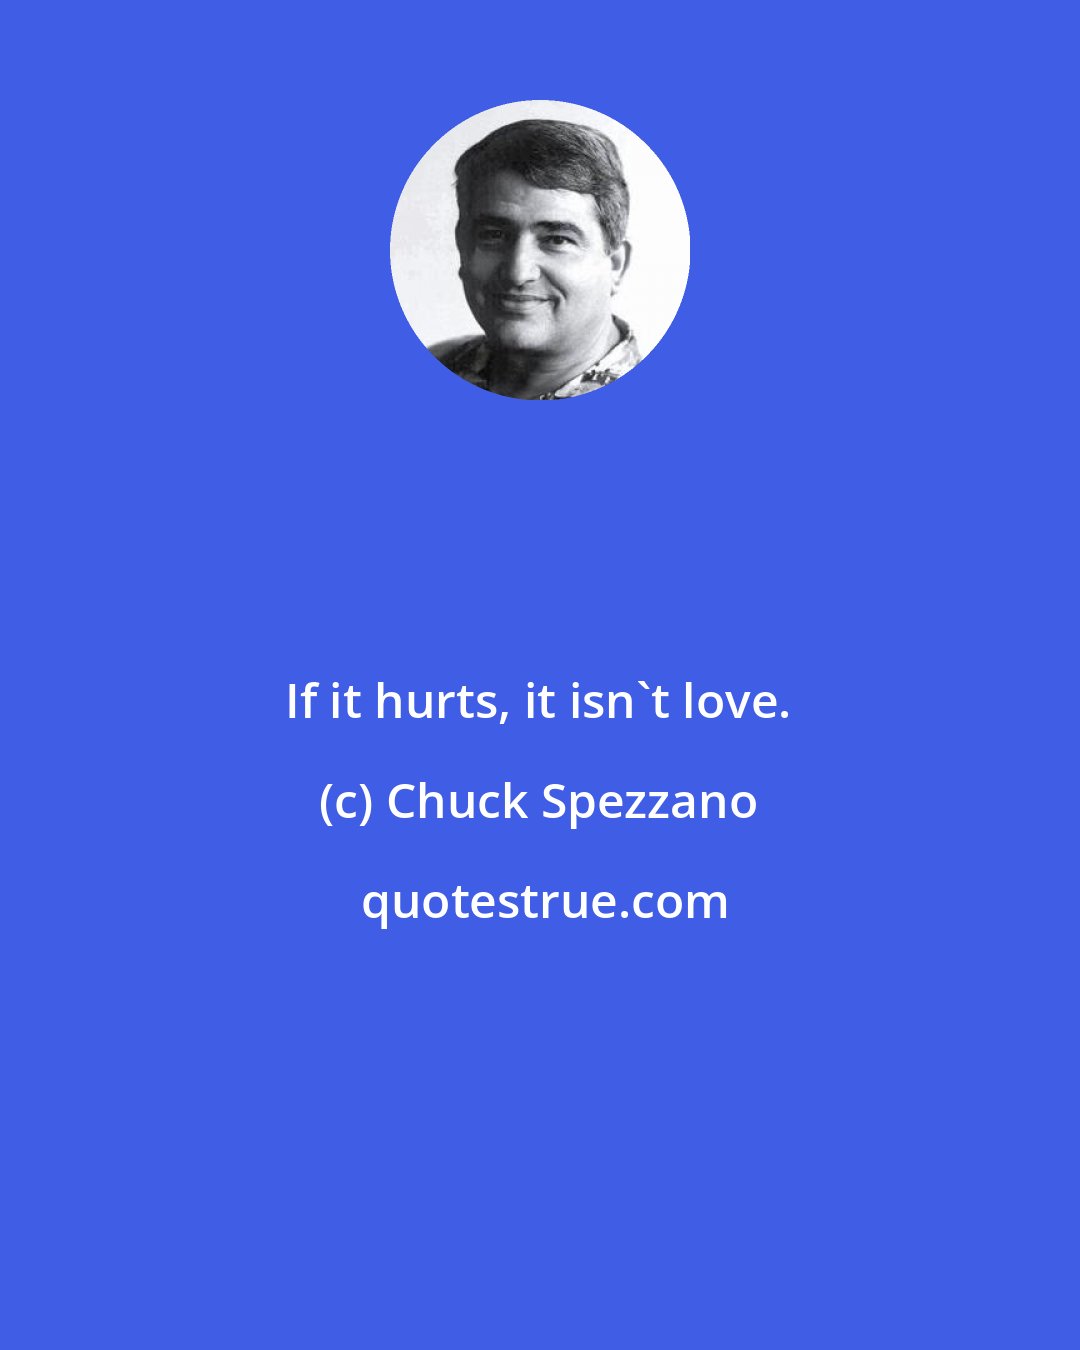 Chuck Spezzano: If it hurts, it isn't love.